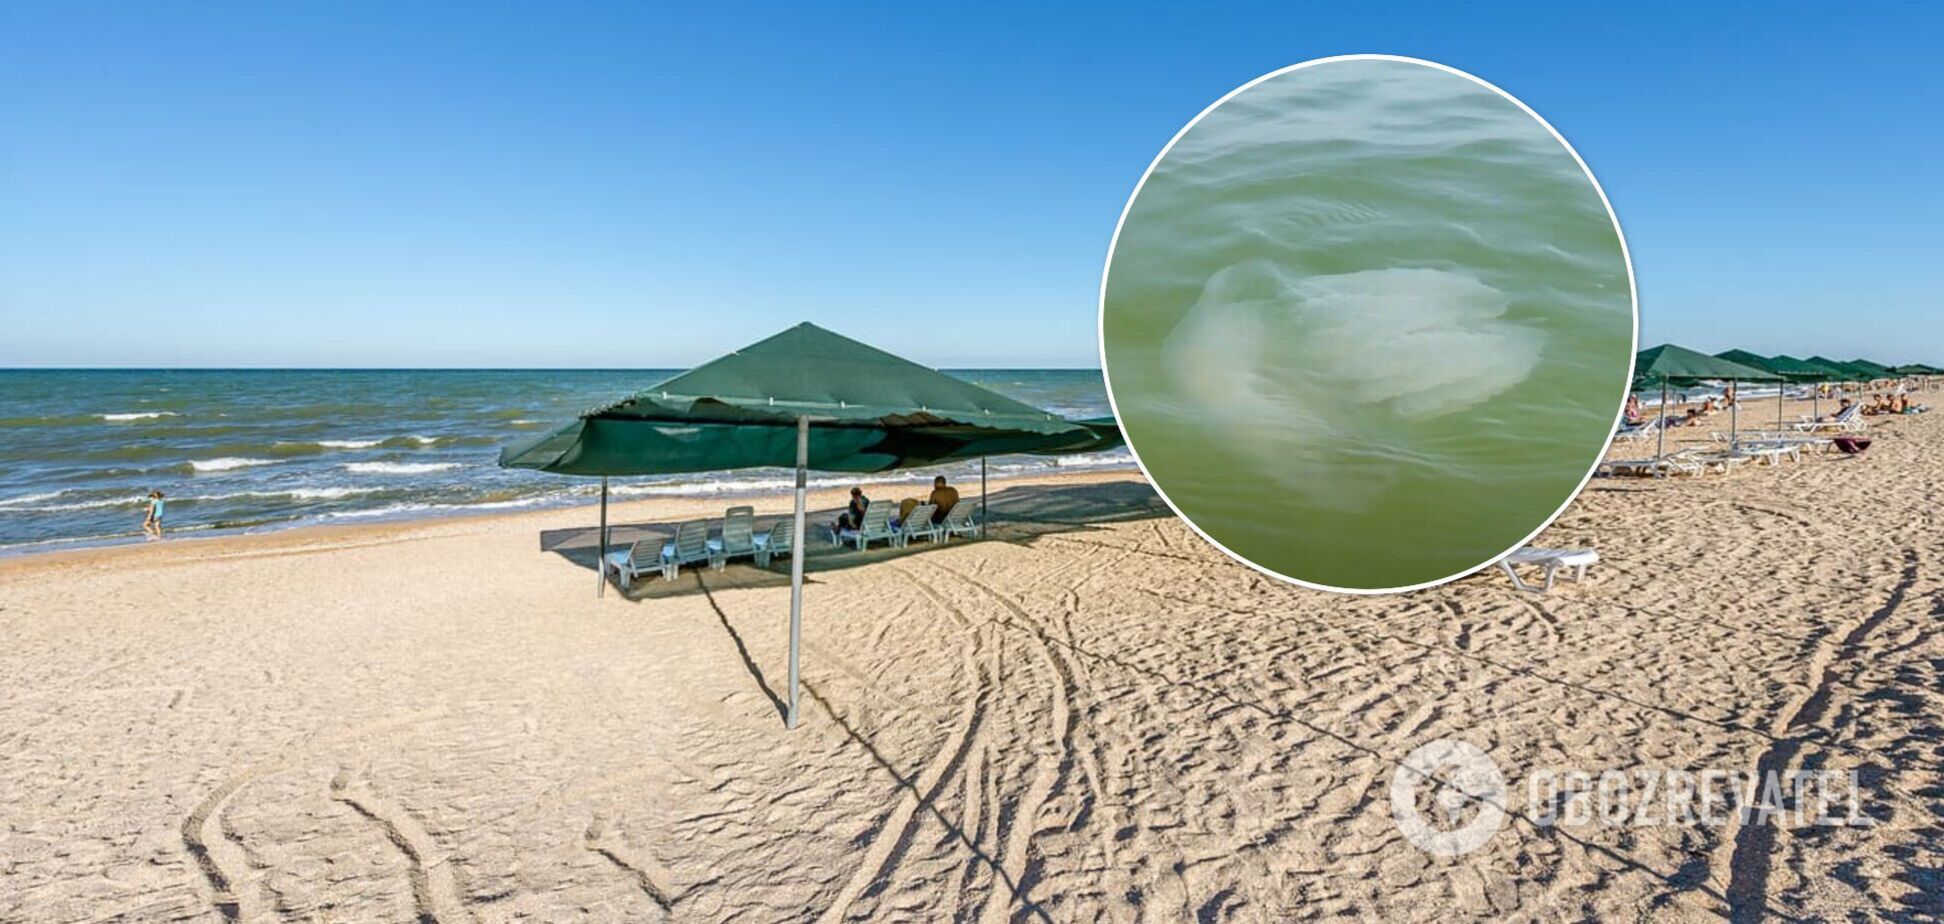 Купаться уже неприятно: туристы пожаловались на нашествие медуз в Азовском море. Видео